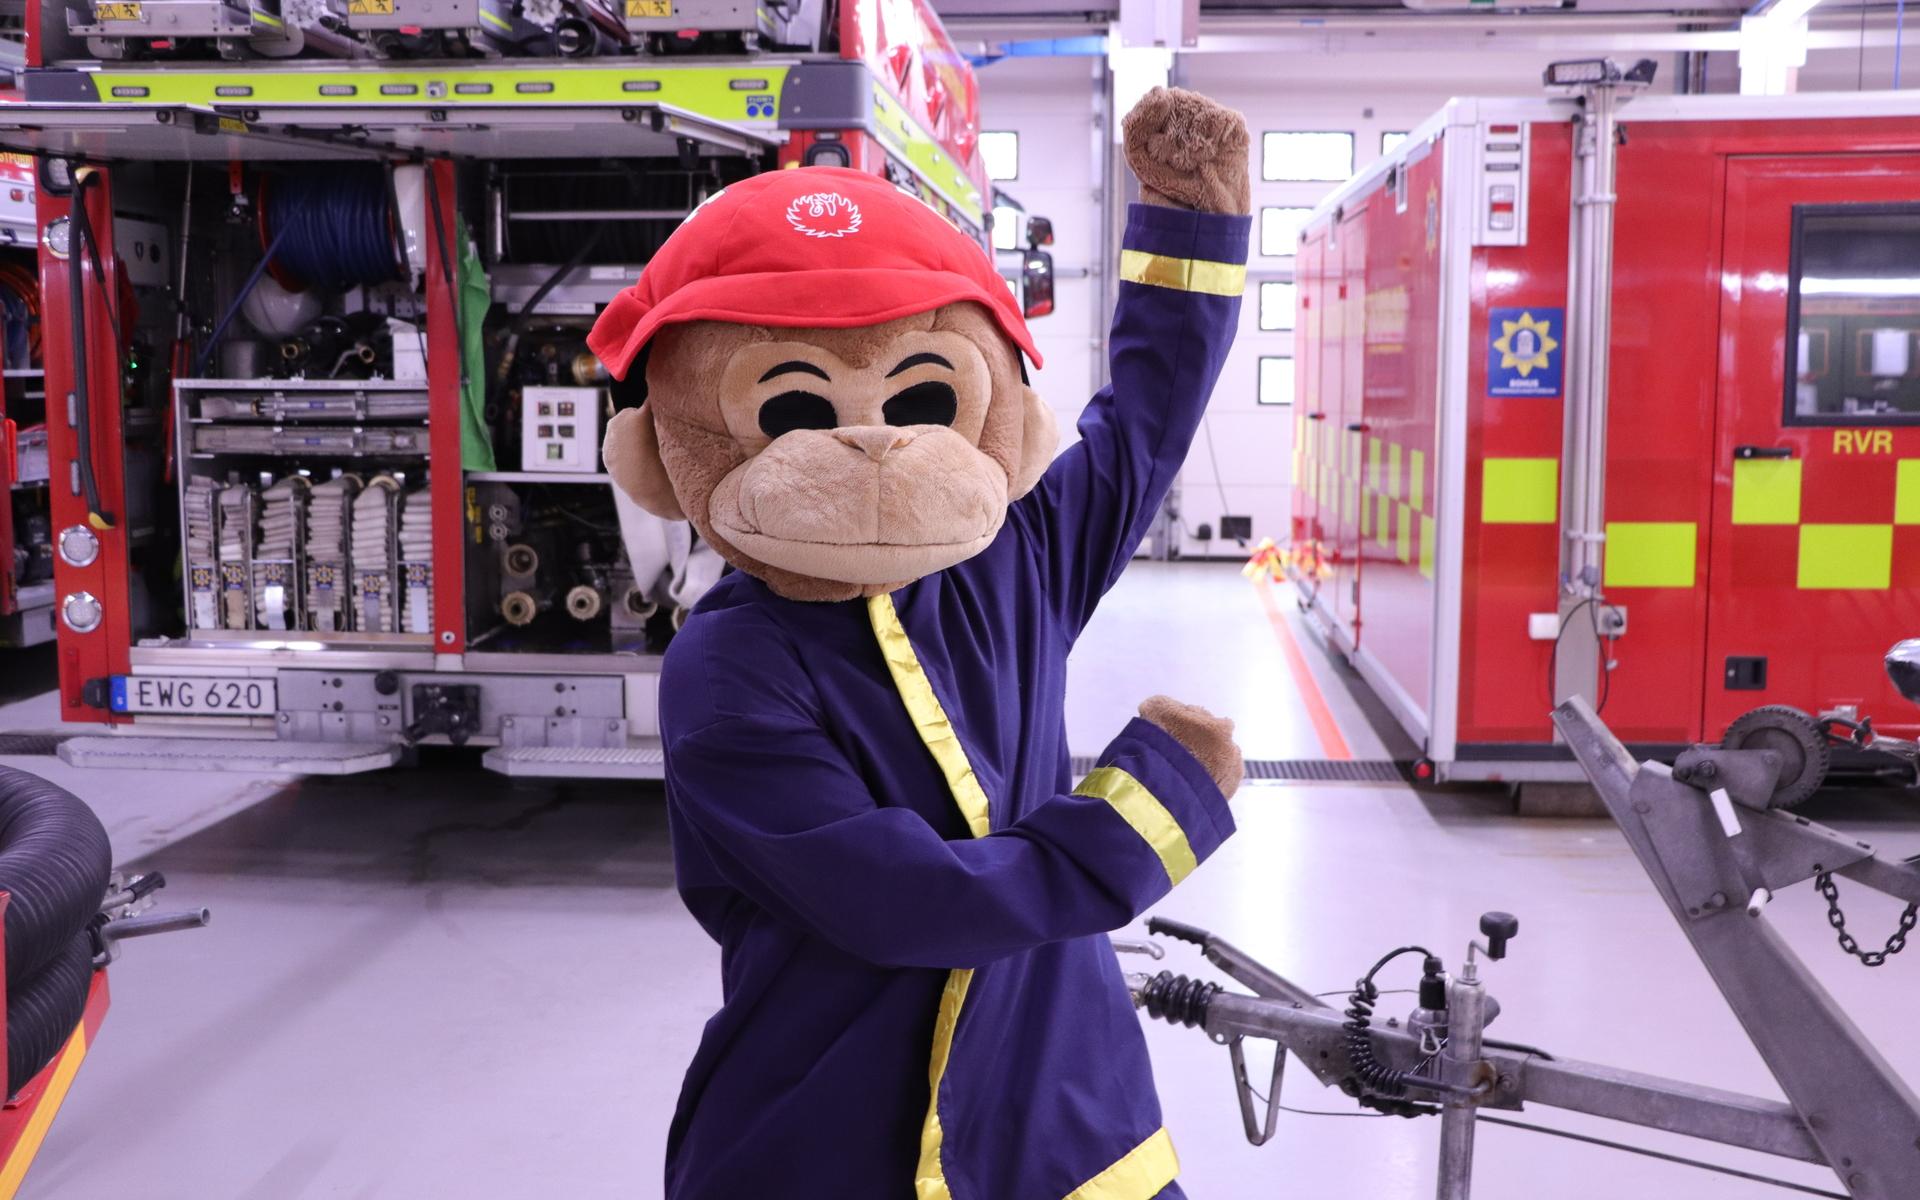 Flammy är Räddningstjänstens maskot. Han kommer spexa och få besökarna att dra på mungiporna. Under kostymen döljer sig brandmannen Calle Björkell.